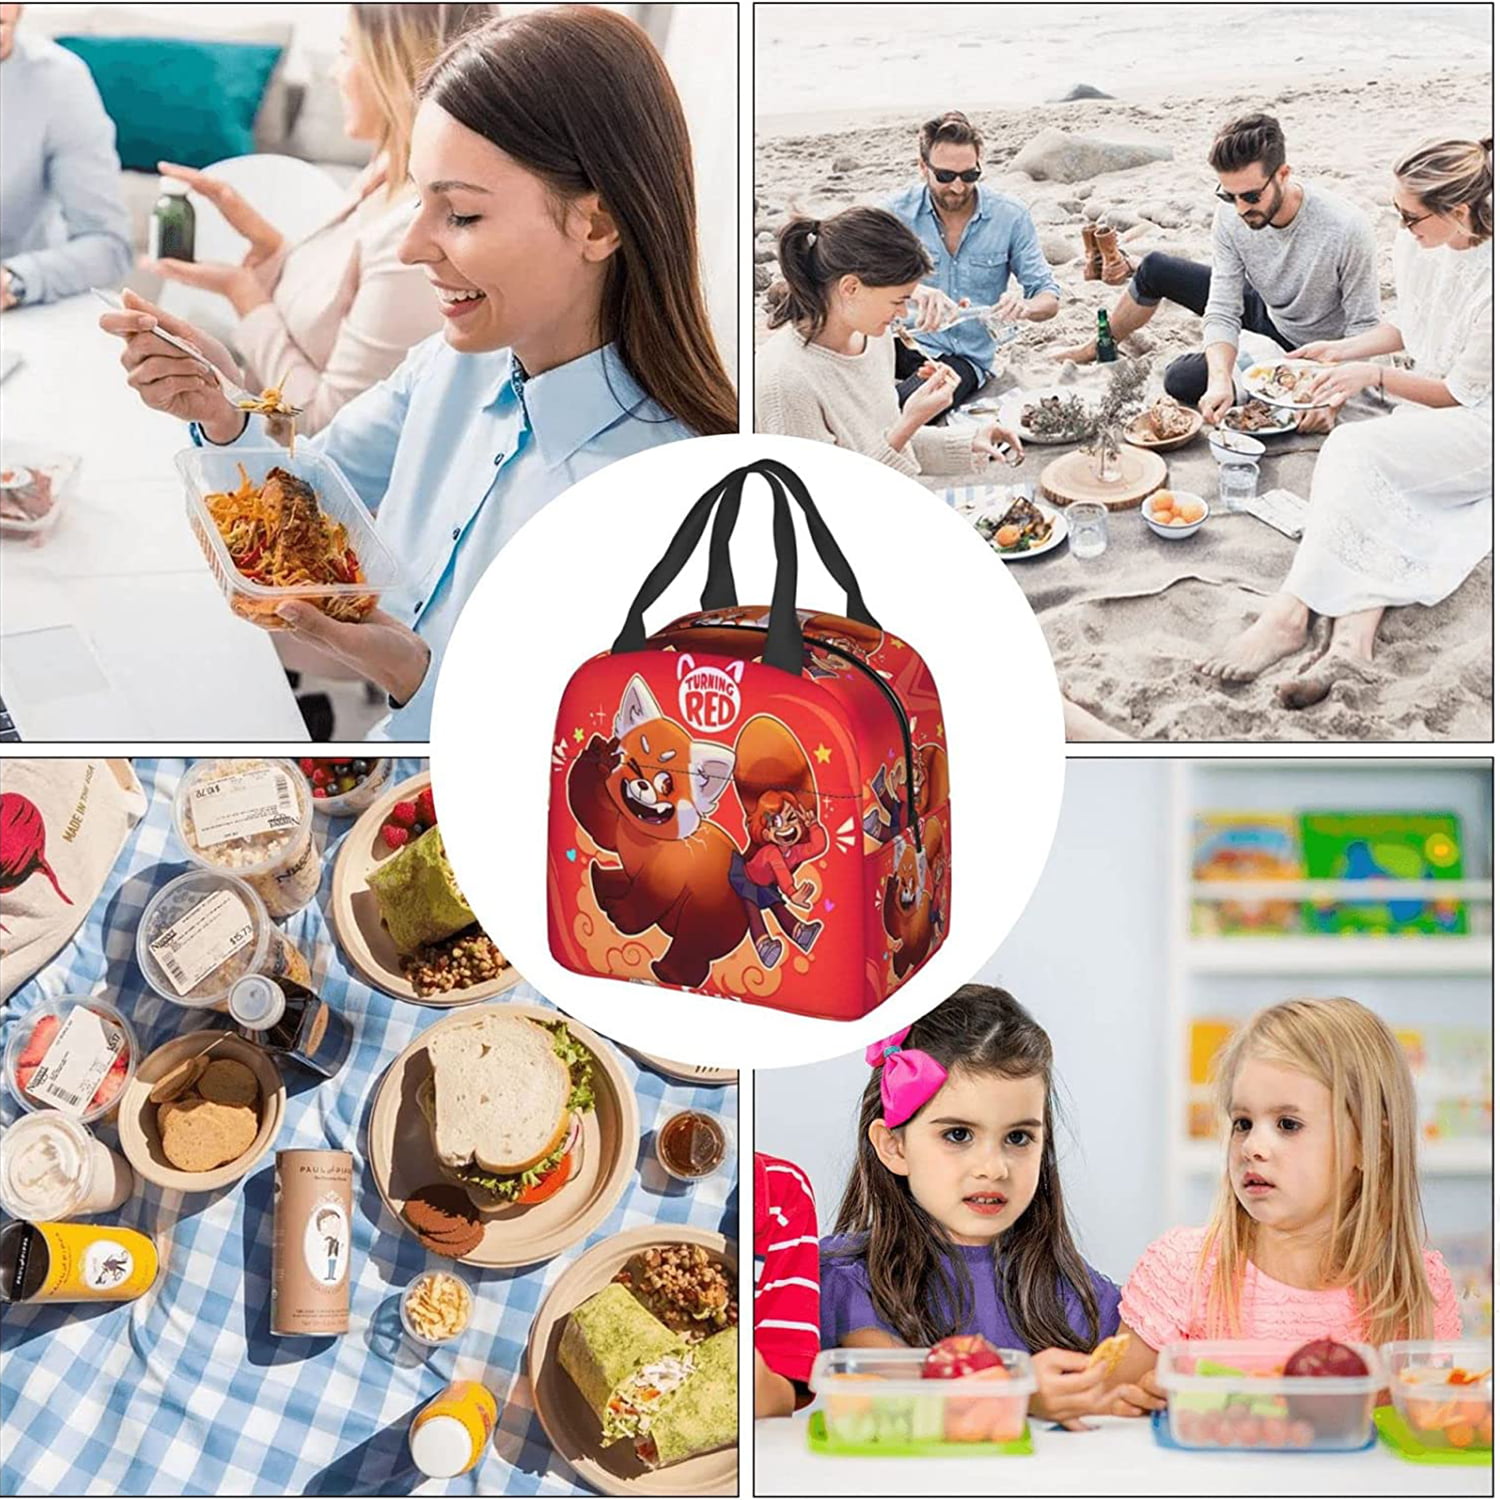 Plaid Tartan hanksgiving Pumpkins Lunch Box Women Lunch Bag with Water  Bottle Holder Kids Cooler Bag Insulated Lunchbox - AliExpress